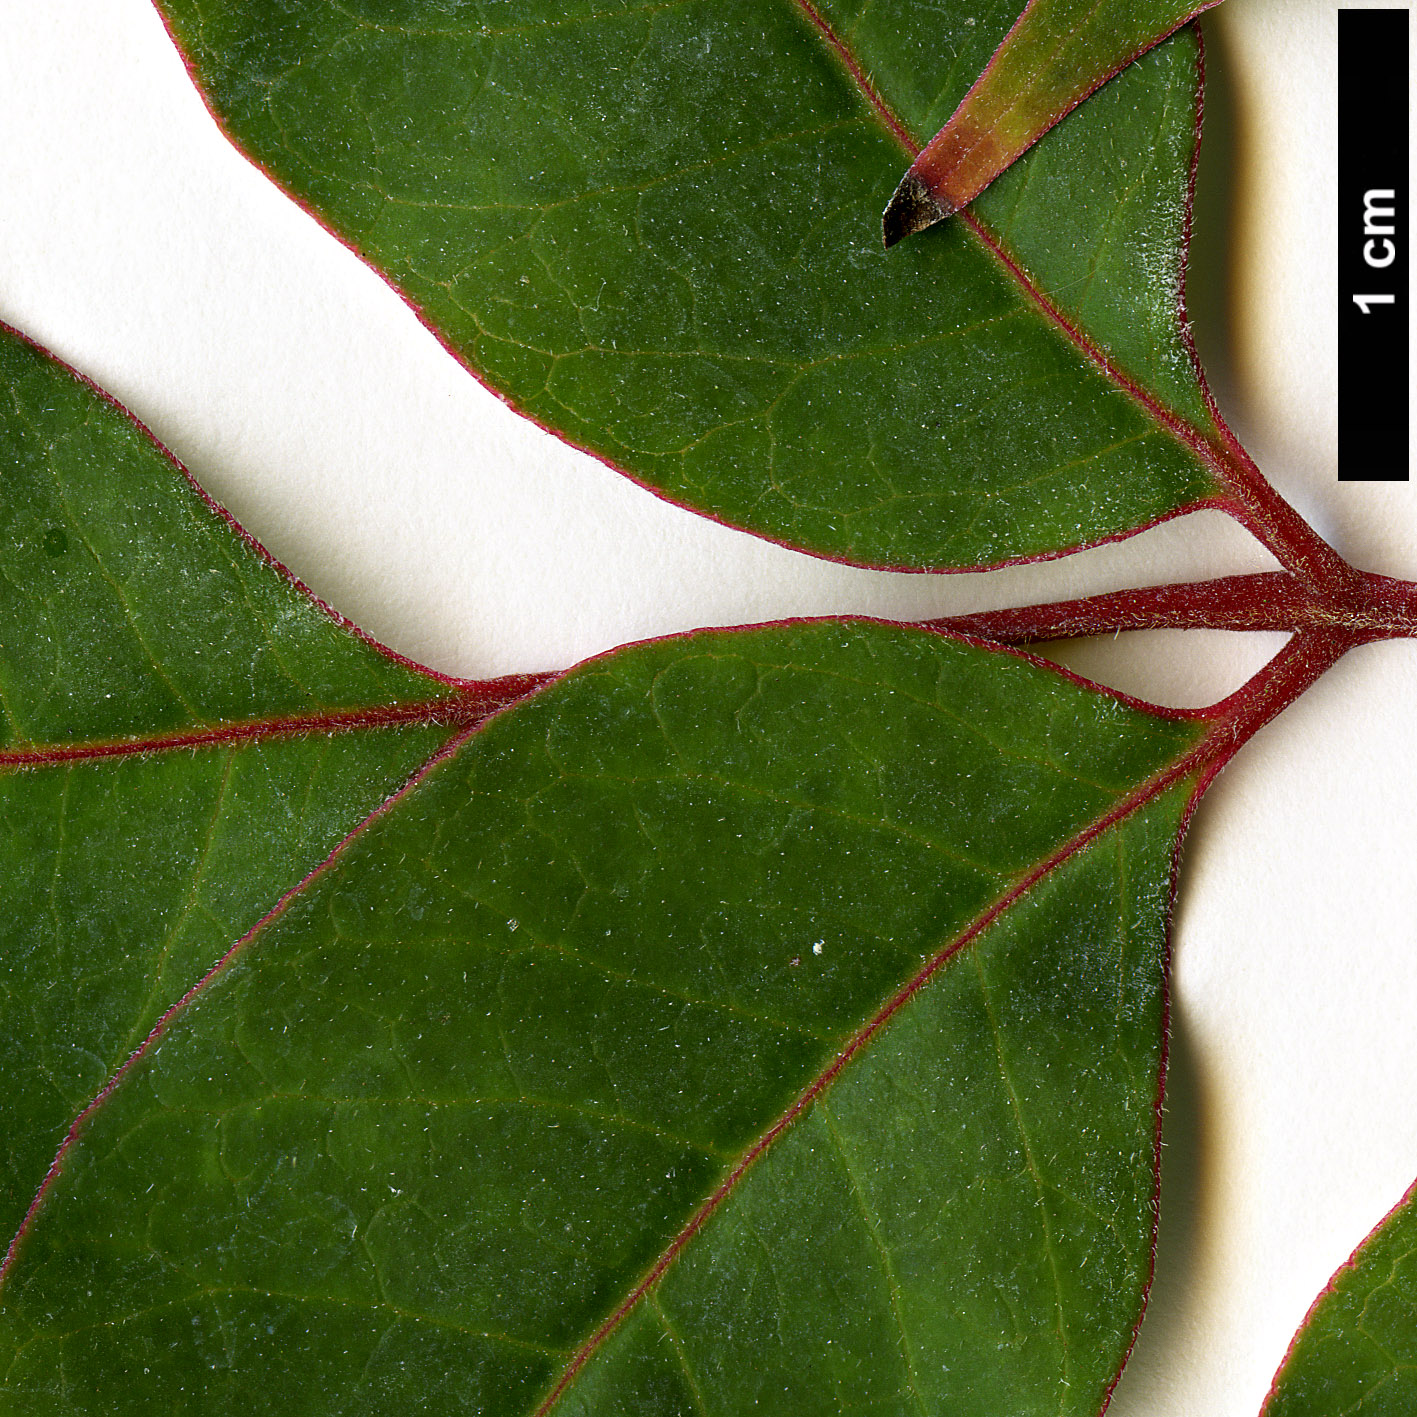 High resolution image: Family: Rutaceae - Genus: Tetradium - Taxon: glabrifolium